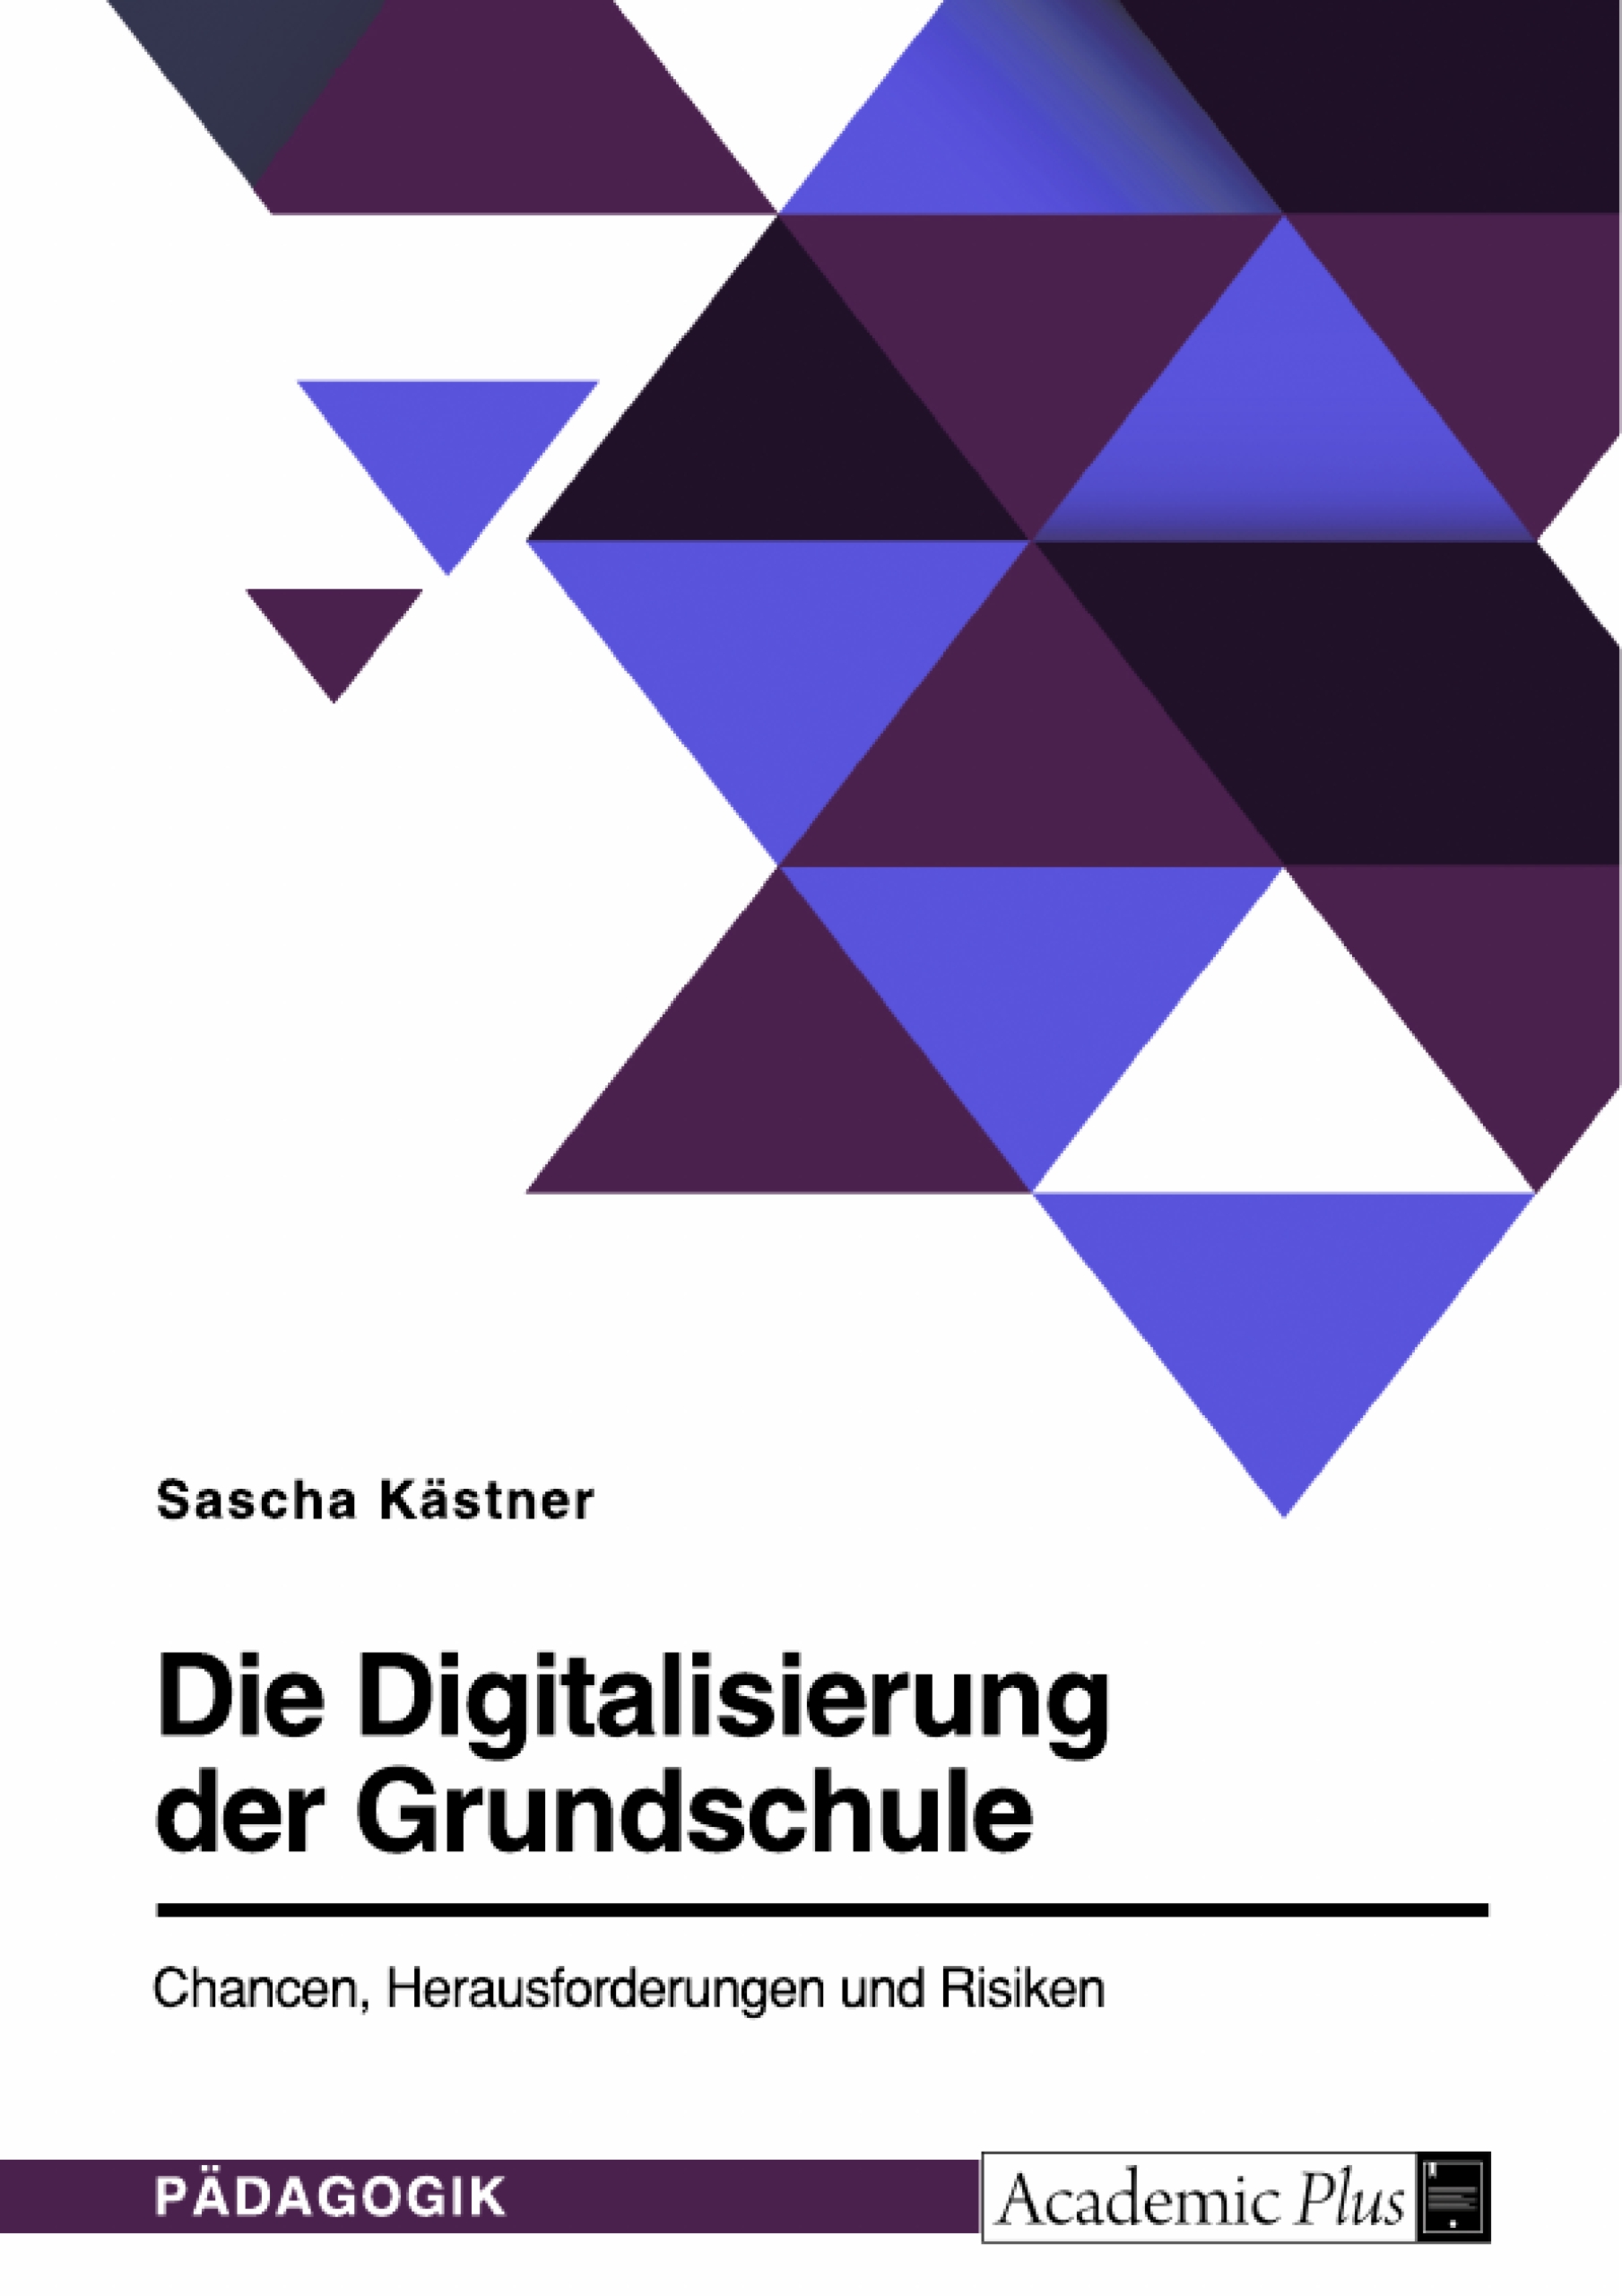 Wie gelingt Digitalisierung an deutschen Grundschulen?